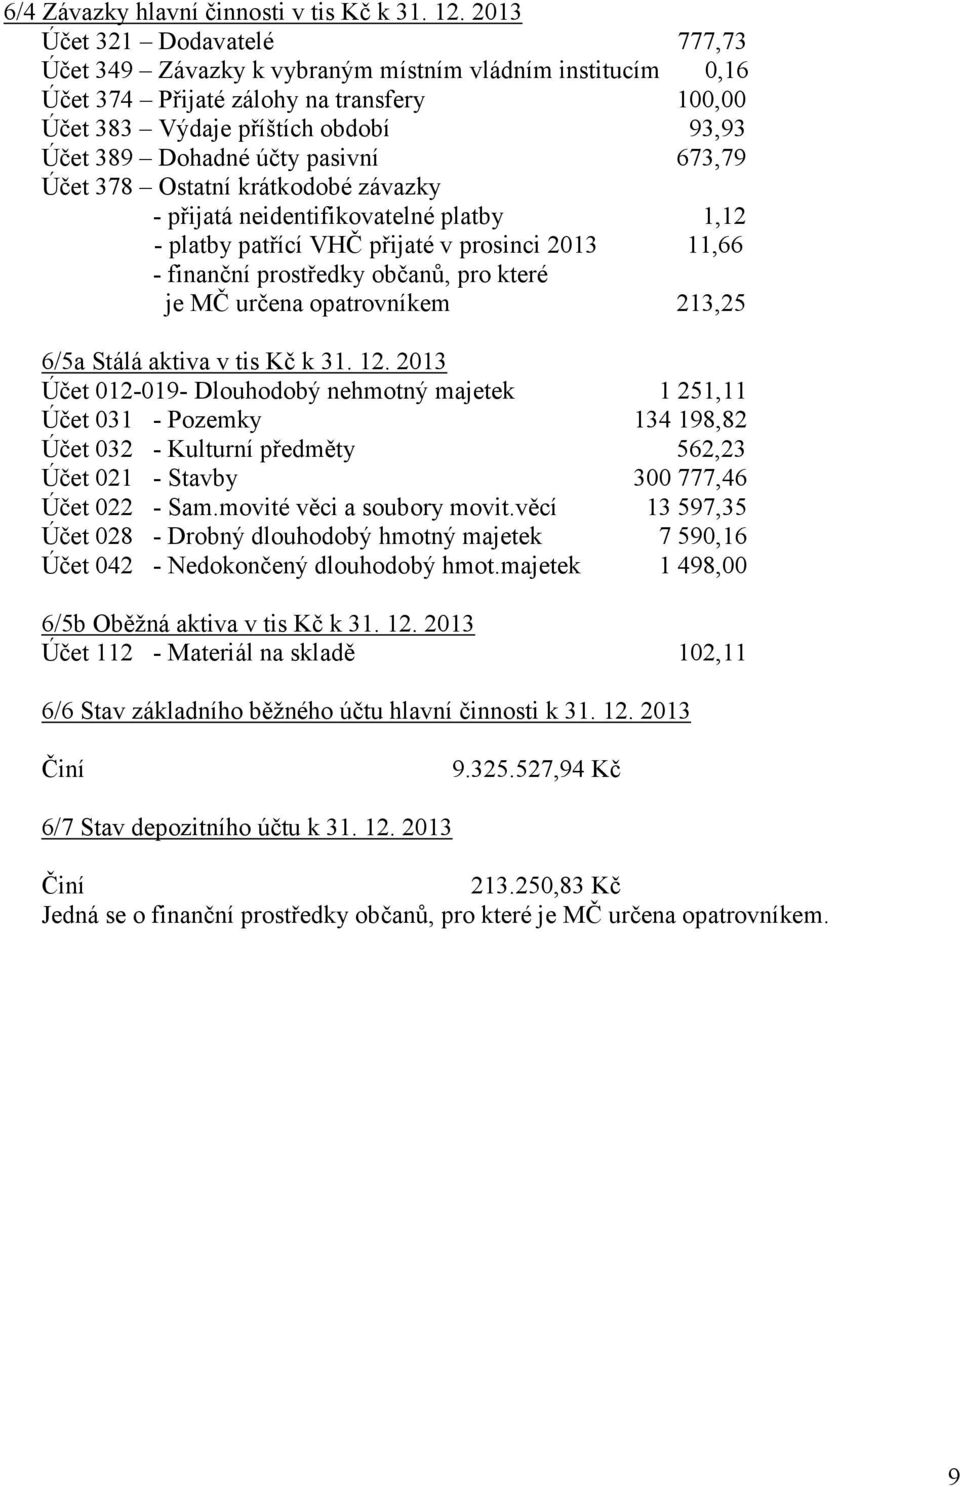 pasivní 673,79 Účet 378 Ostatní krátkodobé závazky - přijatá neidentifikovatelné platby 1,12 - platby patřící VHČ přijaté v prosinci 2013 11,66 - finanční prostředky občanů, pro které je MČ určena